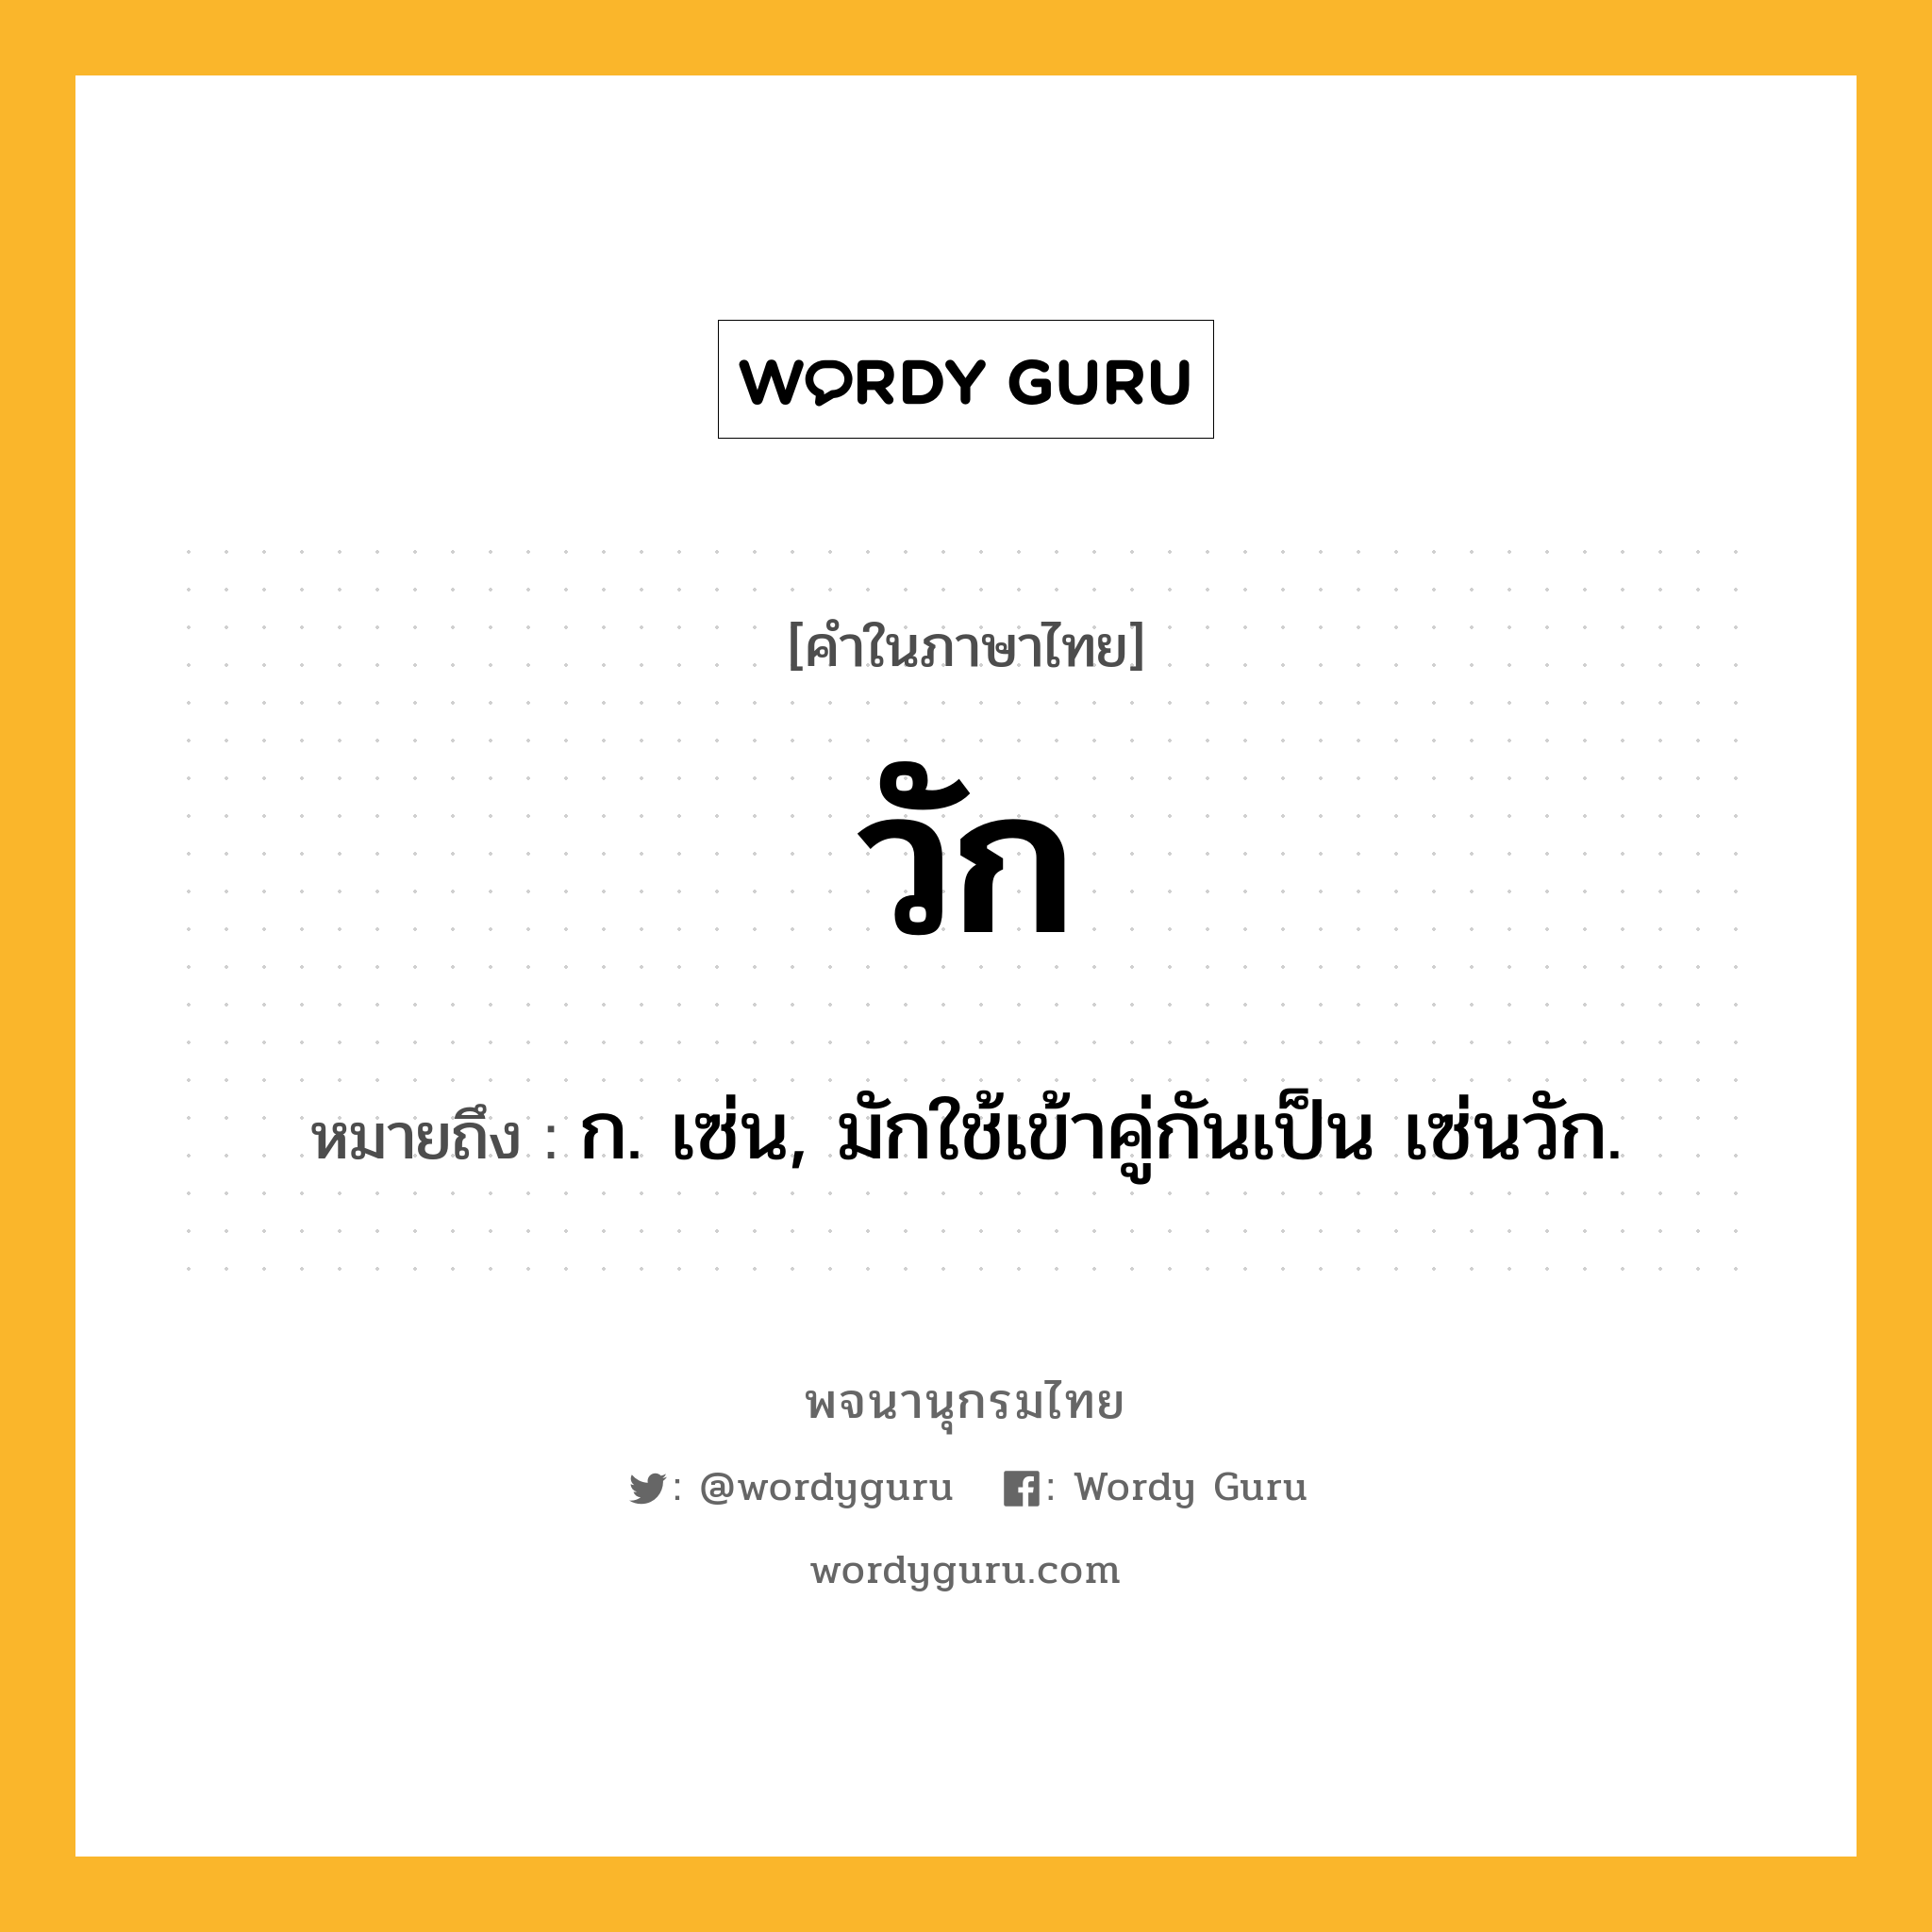 วัก หมายถึงอะไร?, คำในภาษาไทย วัก หมายถึง ก. เซ่น, มักใช้เข้าคู่กันเป็น เซ่นวัก.